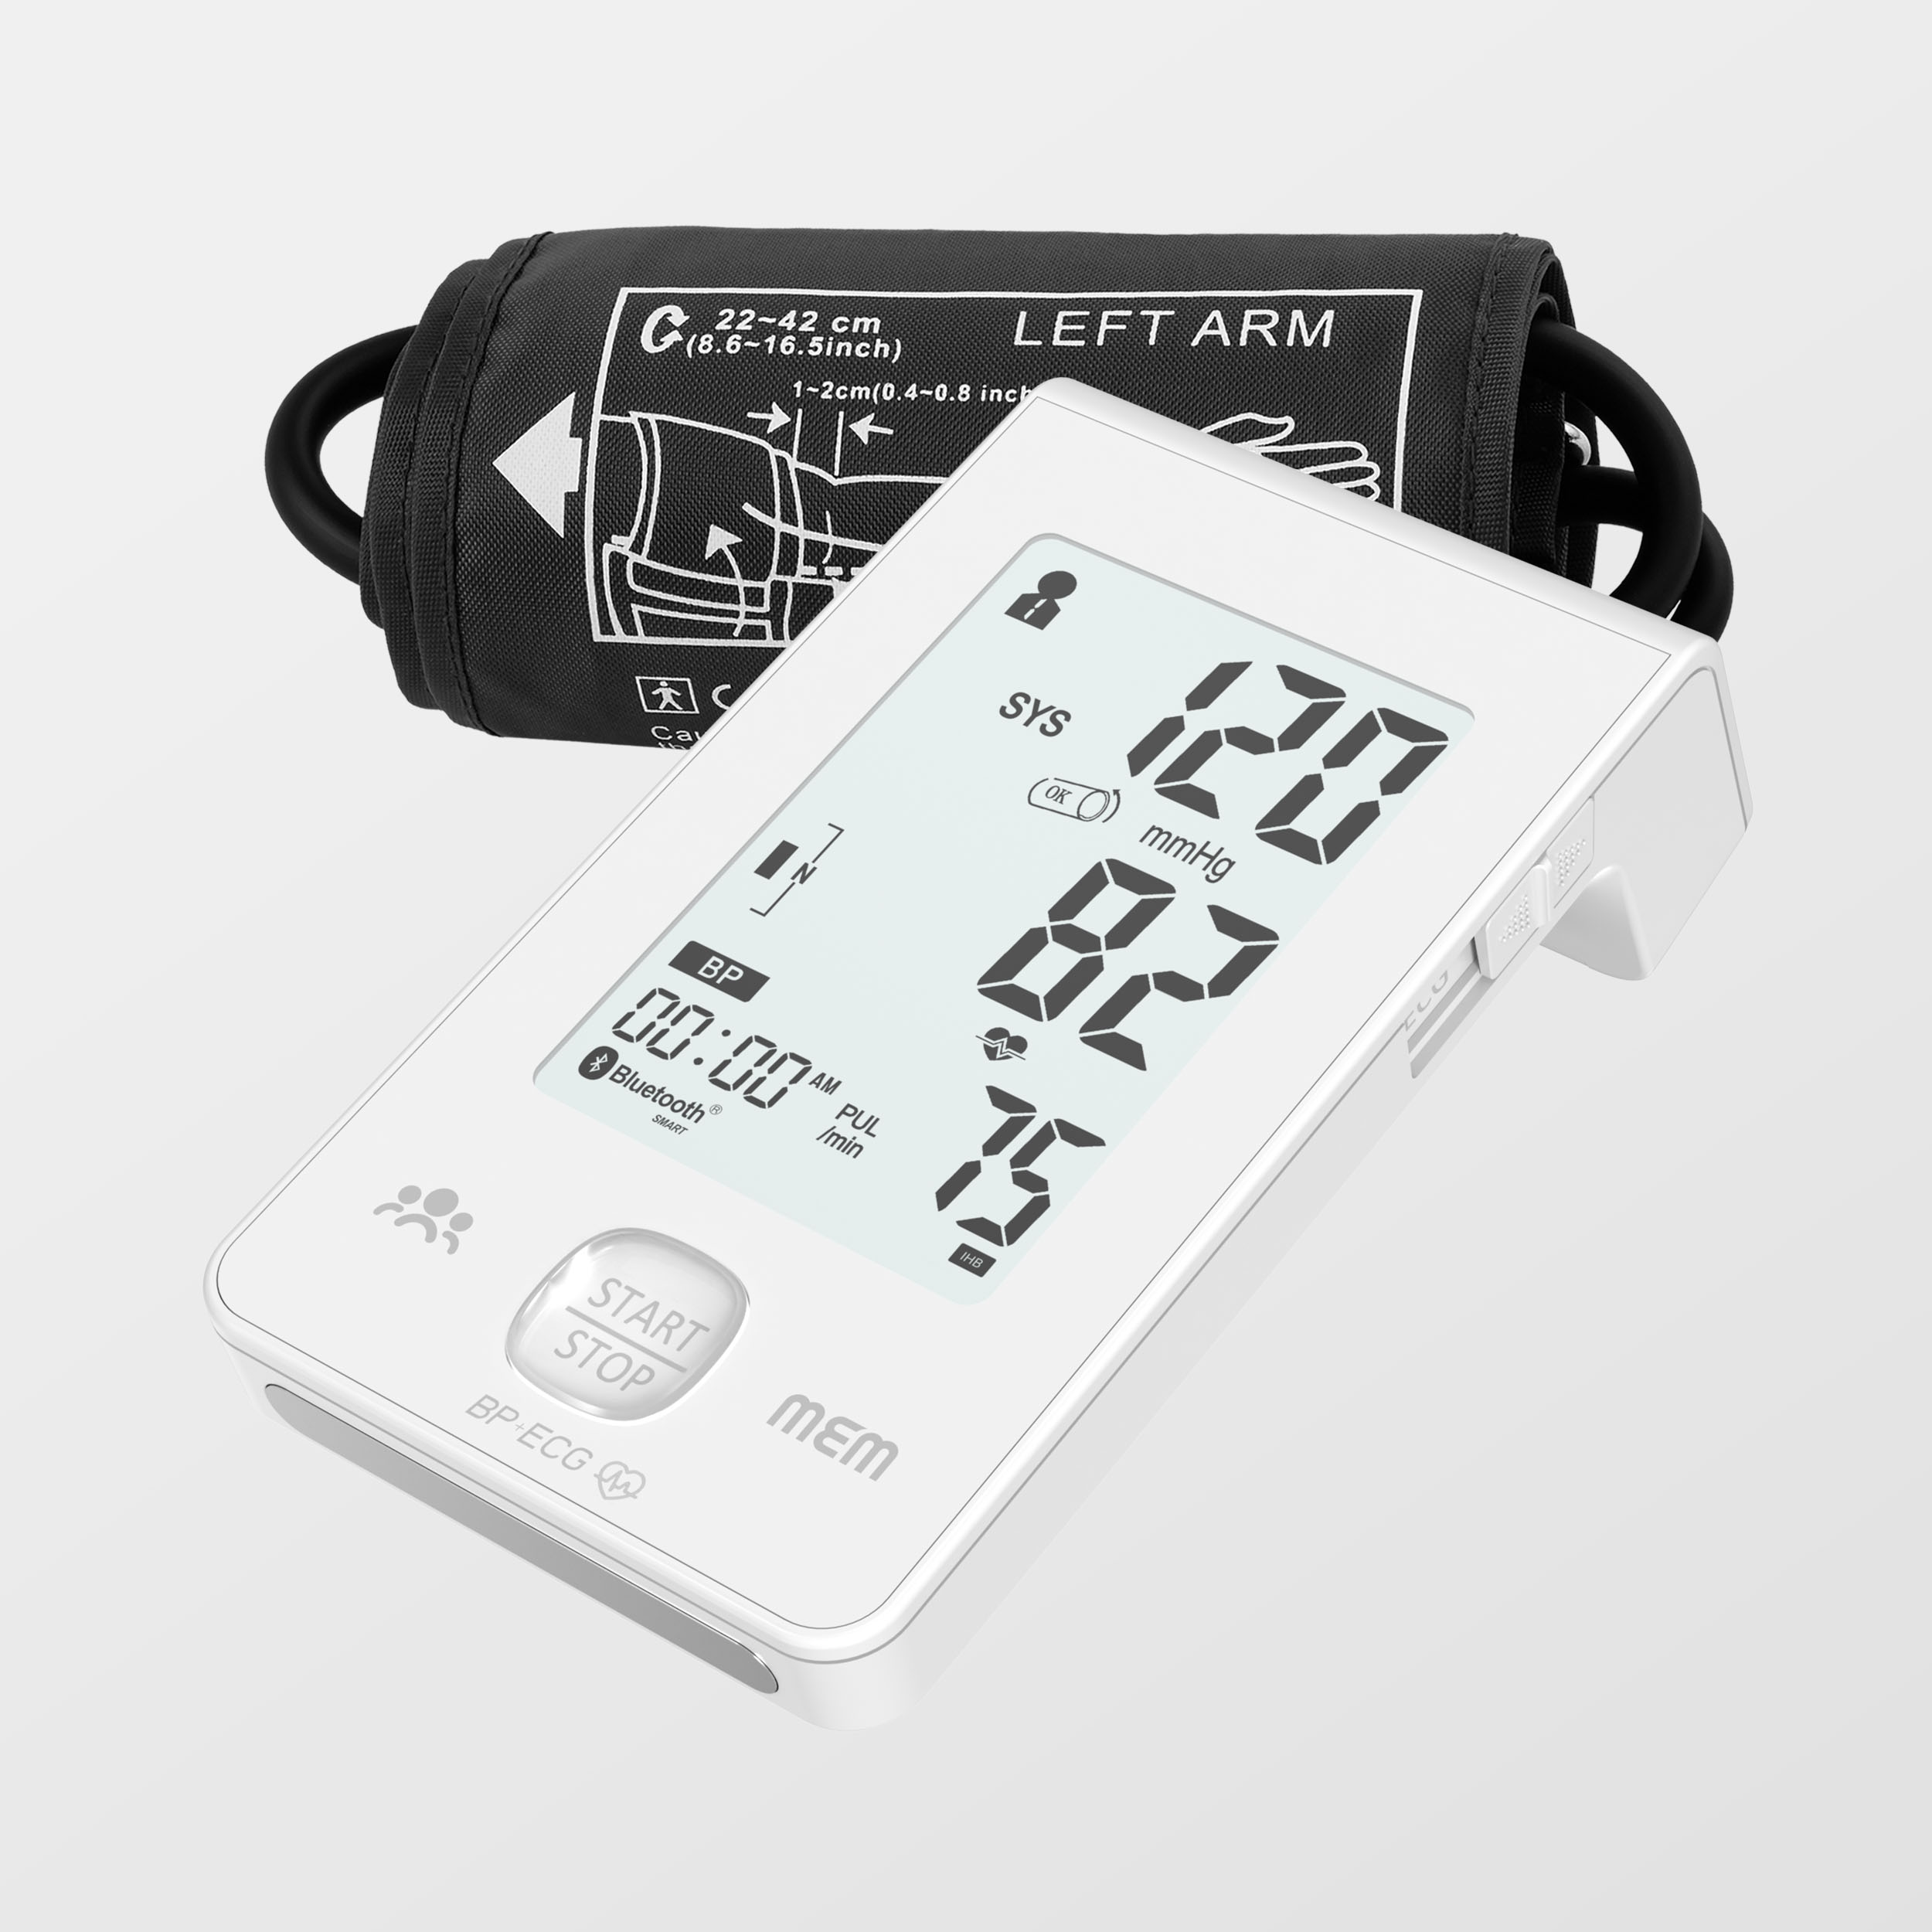 Labing Dako nga Display Dual Power Supply Intelligent Blood Pressure Monitor nga adunay Ecg